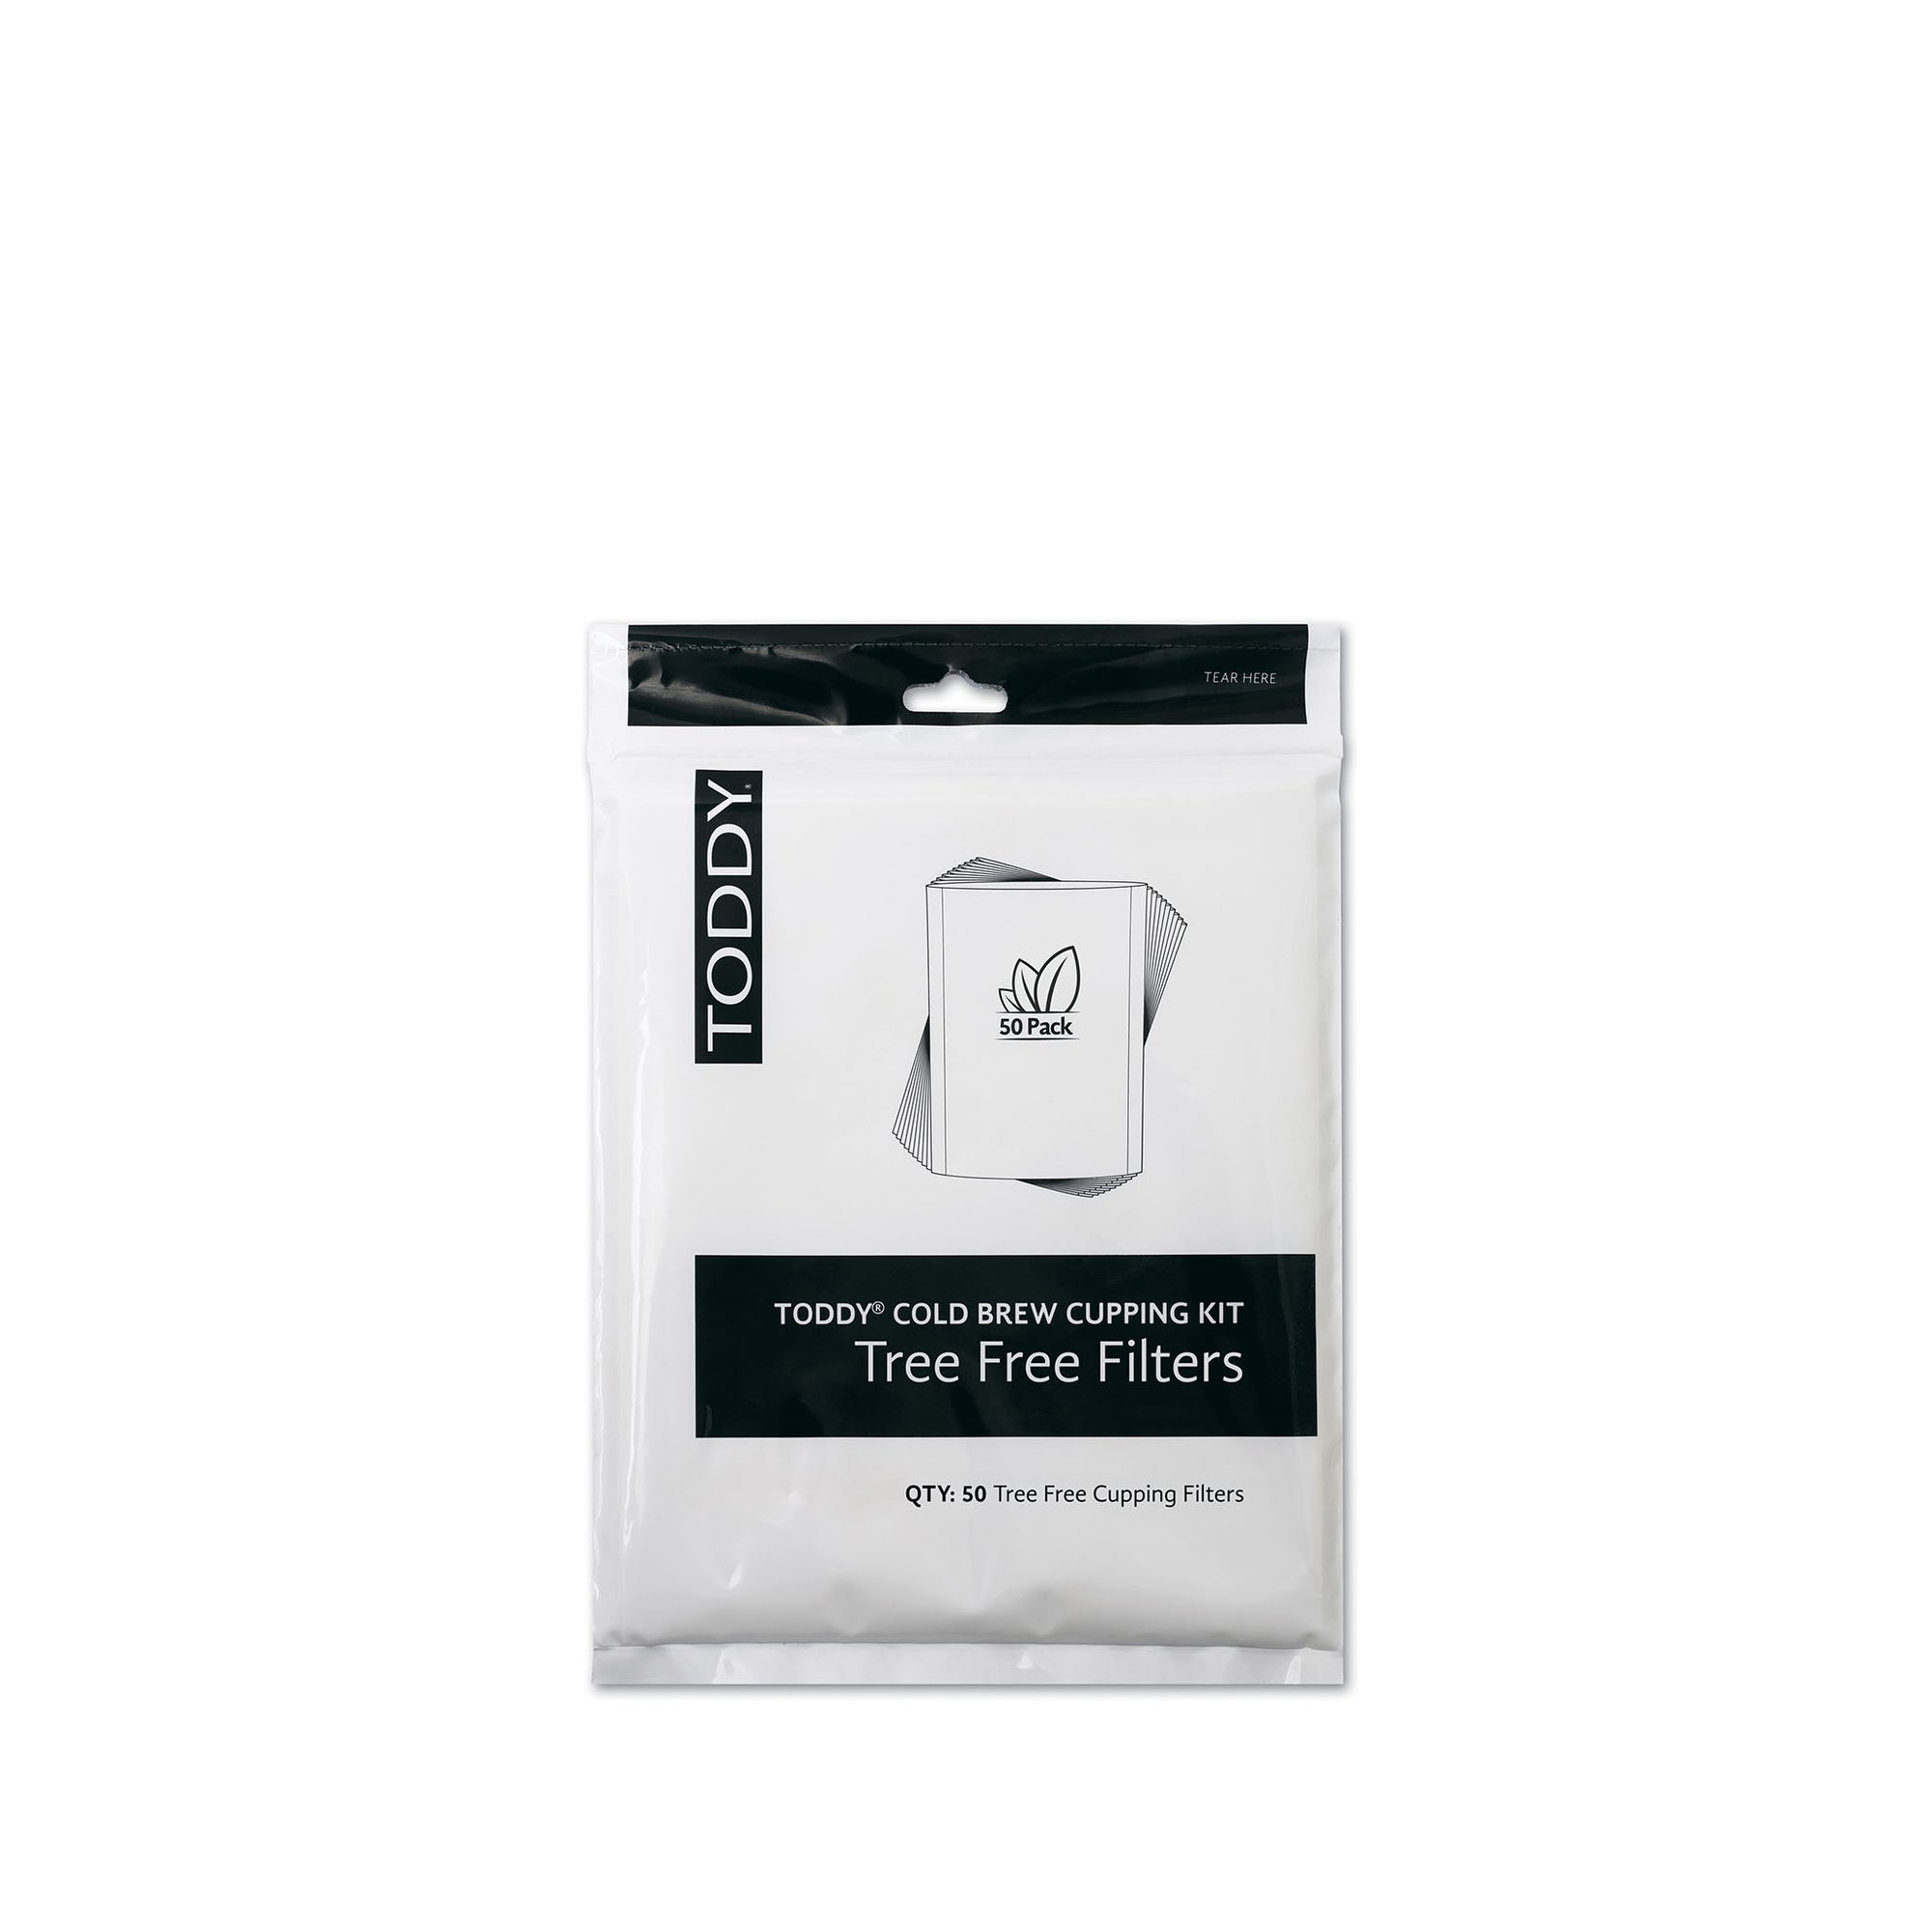 Coldbrew Cupping Kit Tree Free Paper Filters 50pcs - Toddy - Espresso Gear